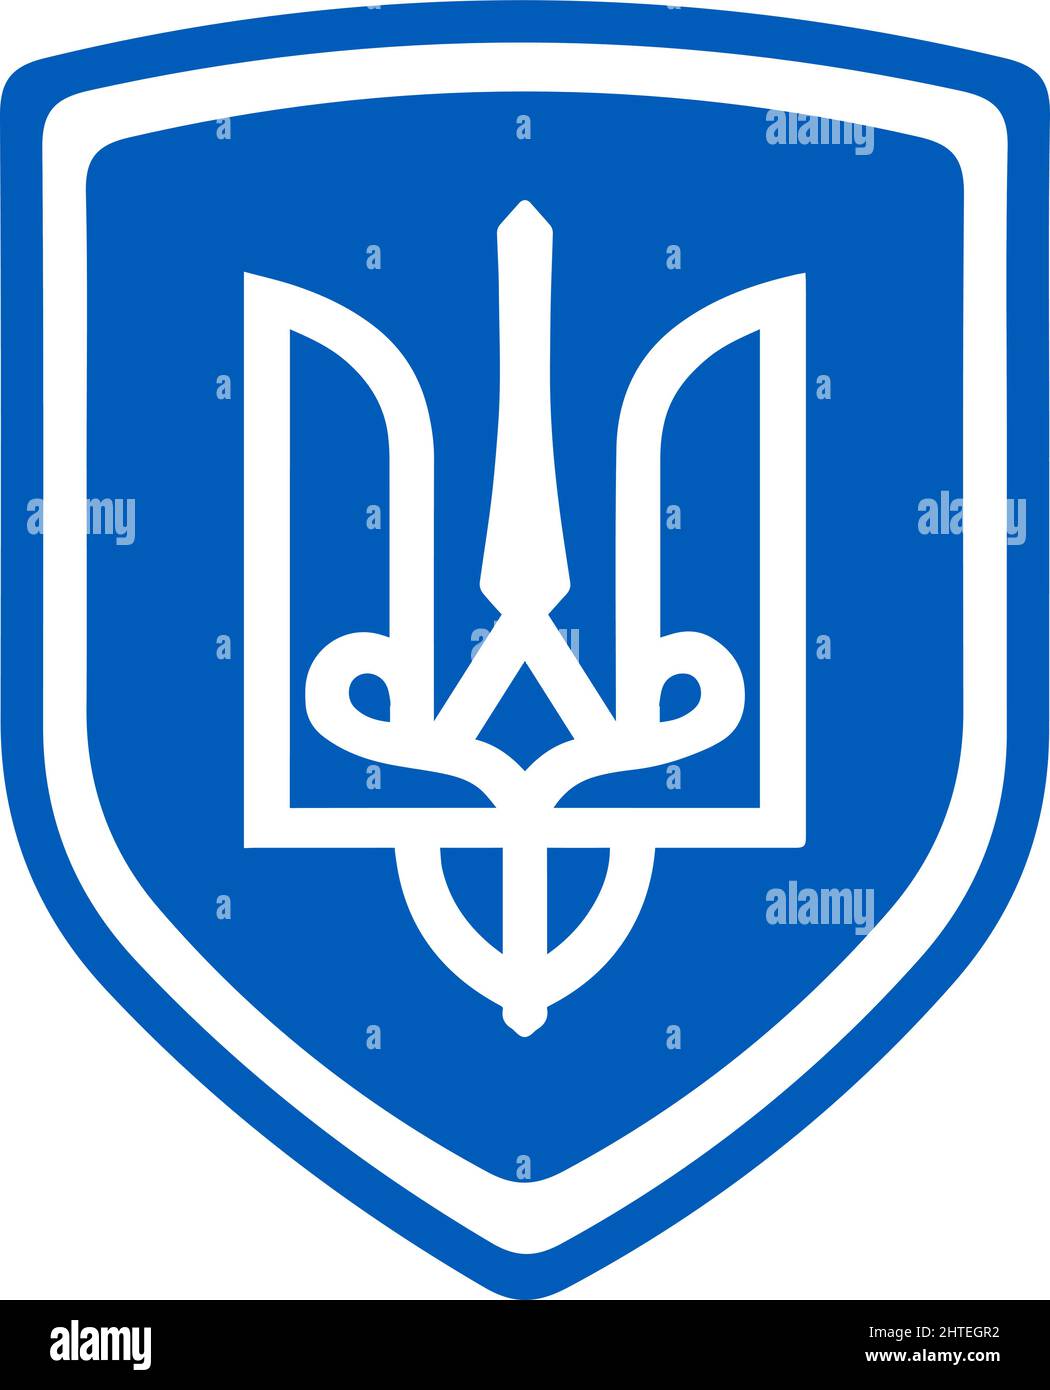 Wappen der Ukraine auf blauem Schild-SupplementalCategories+=Images Stock Vektor